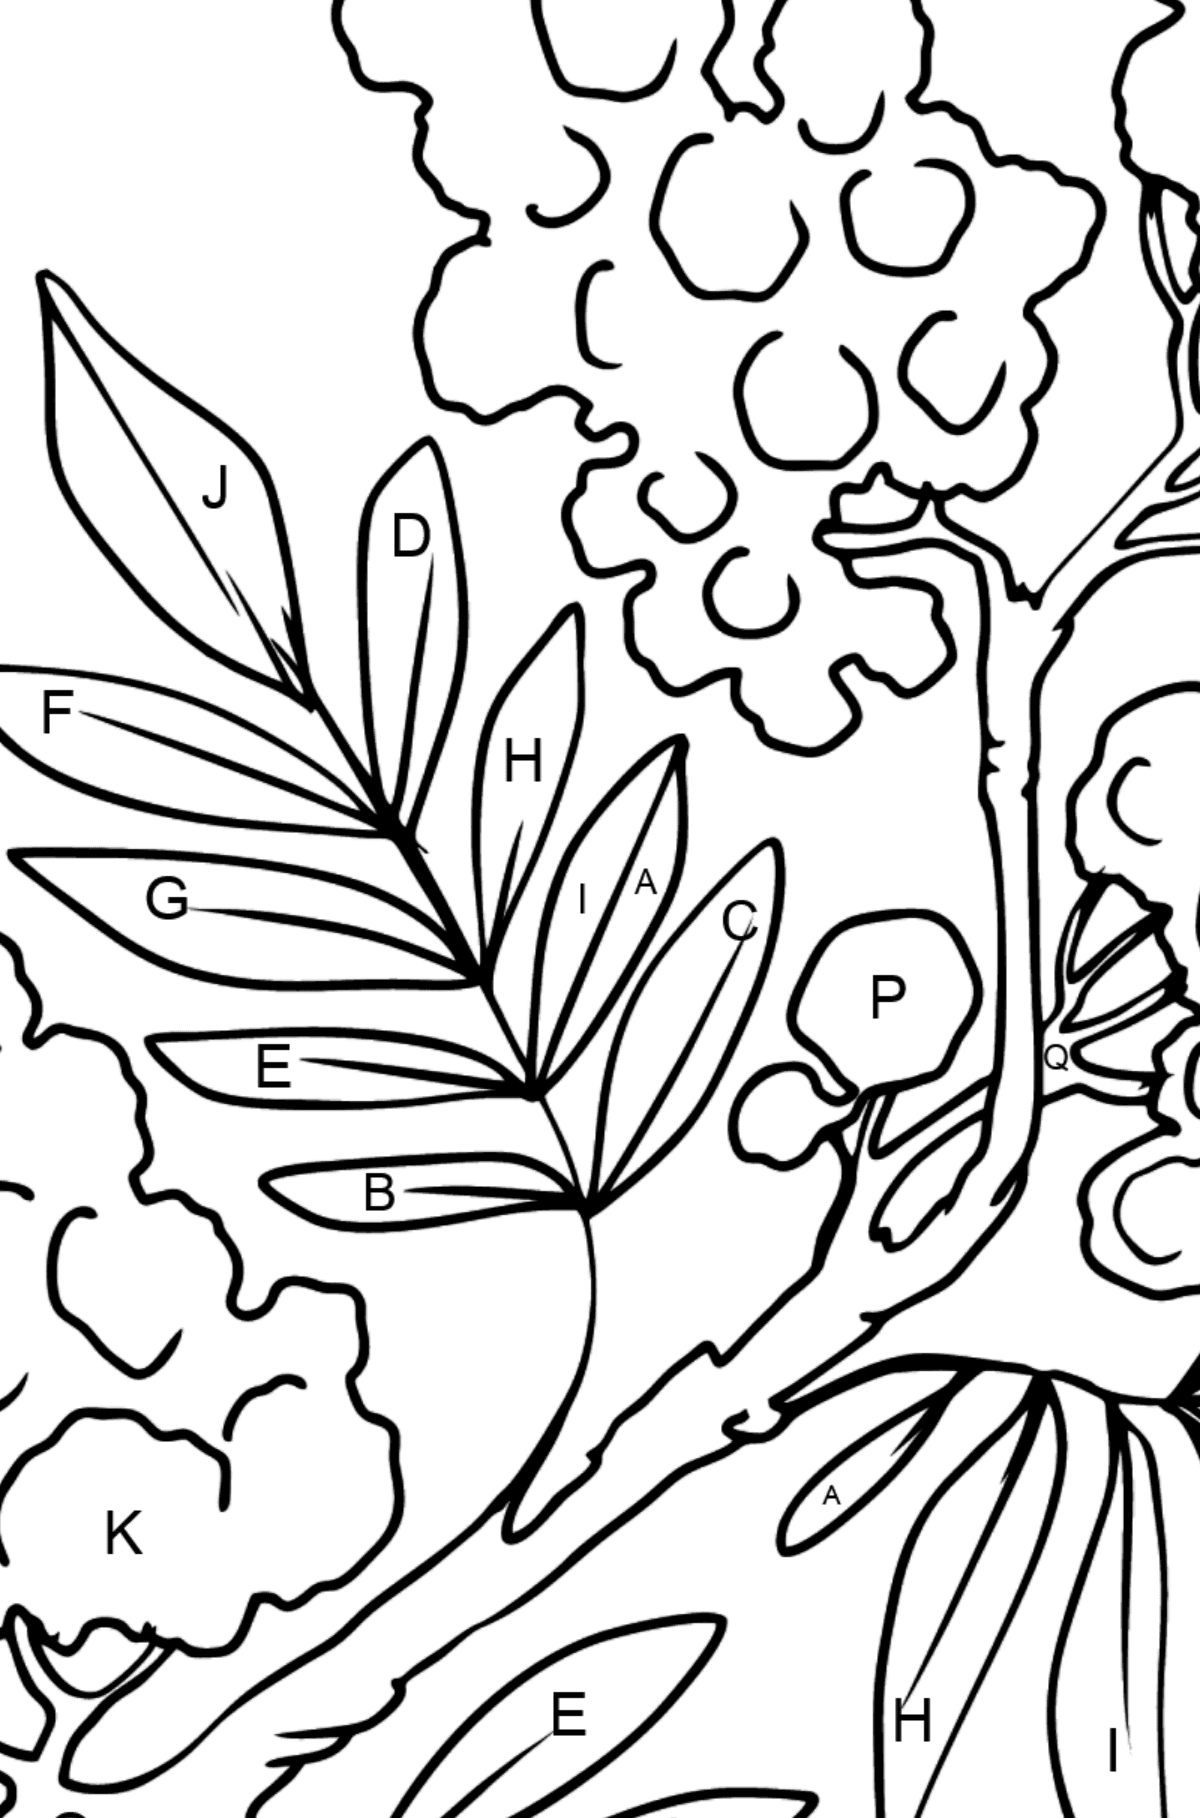 Dibujo de flor para colorear - Mimosa - Colorear por Letras para Niños